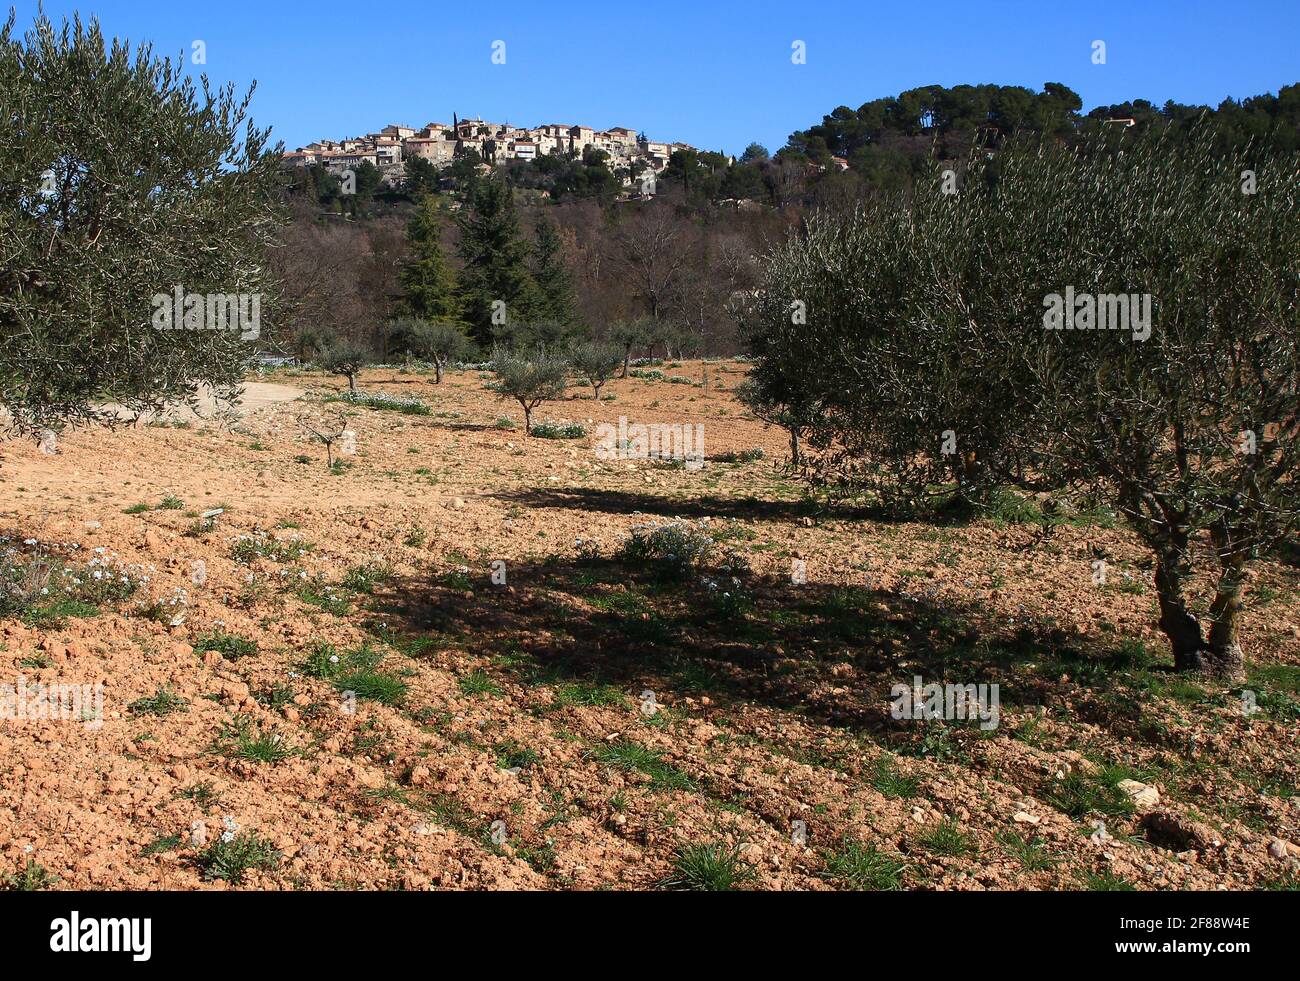 Das Dorf Grambois liegt auf einem steilen Hügel und wird an einem Februarnachmittag von einem Olivenhain aus gesehen (Vaucluse, Lubéron, Frankreich). Stockfoto